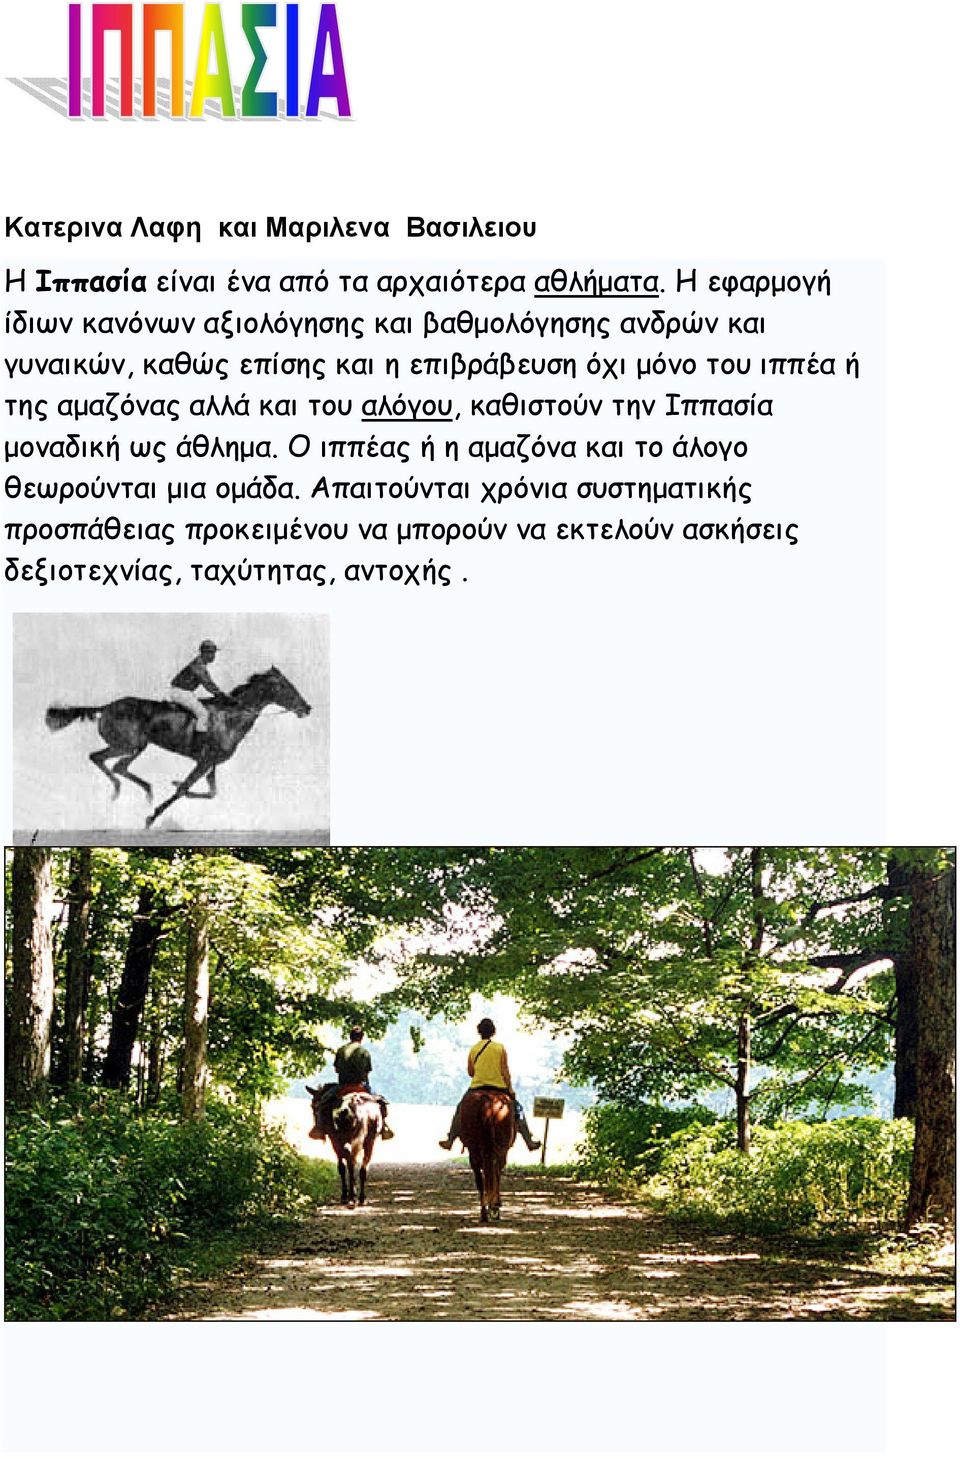 ιππέα ή της αμαζόνας αλλά και του αλόγου, καθιστούν την Ιππασία μοναδική ως άθλημα.